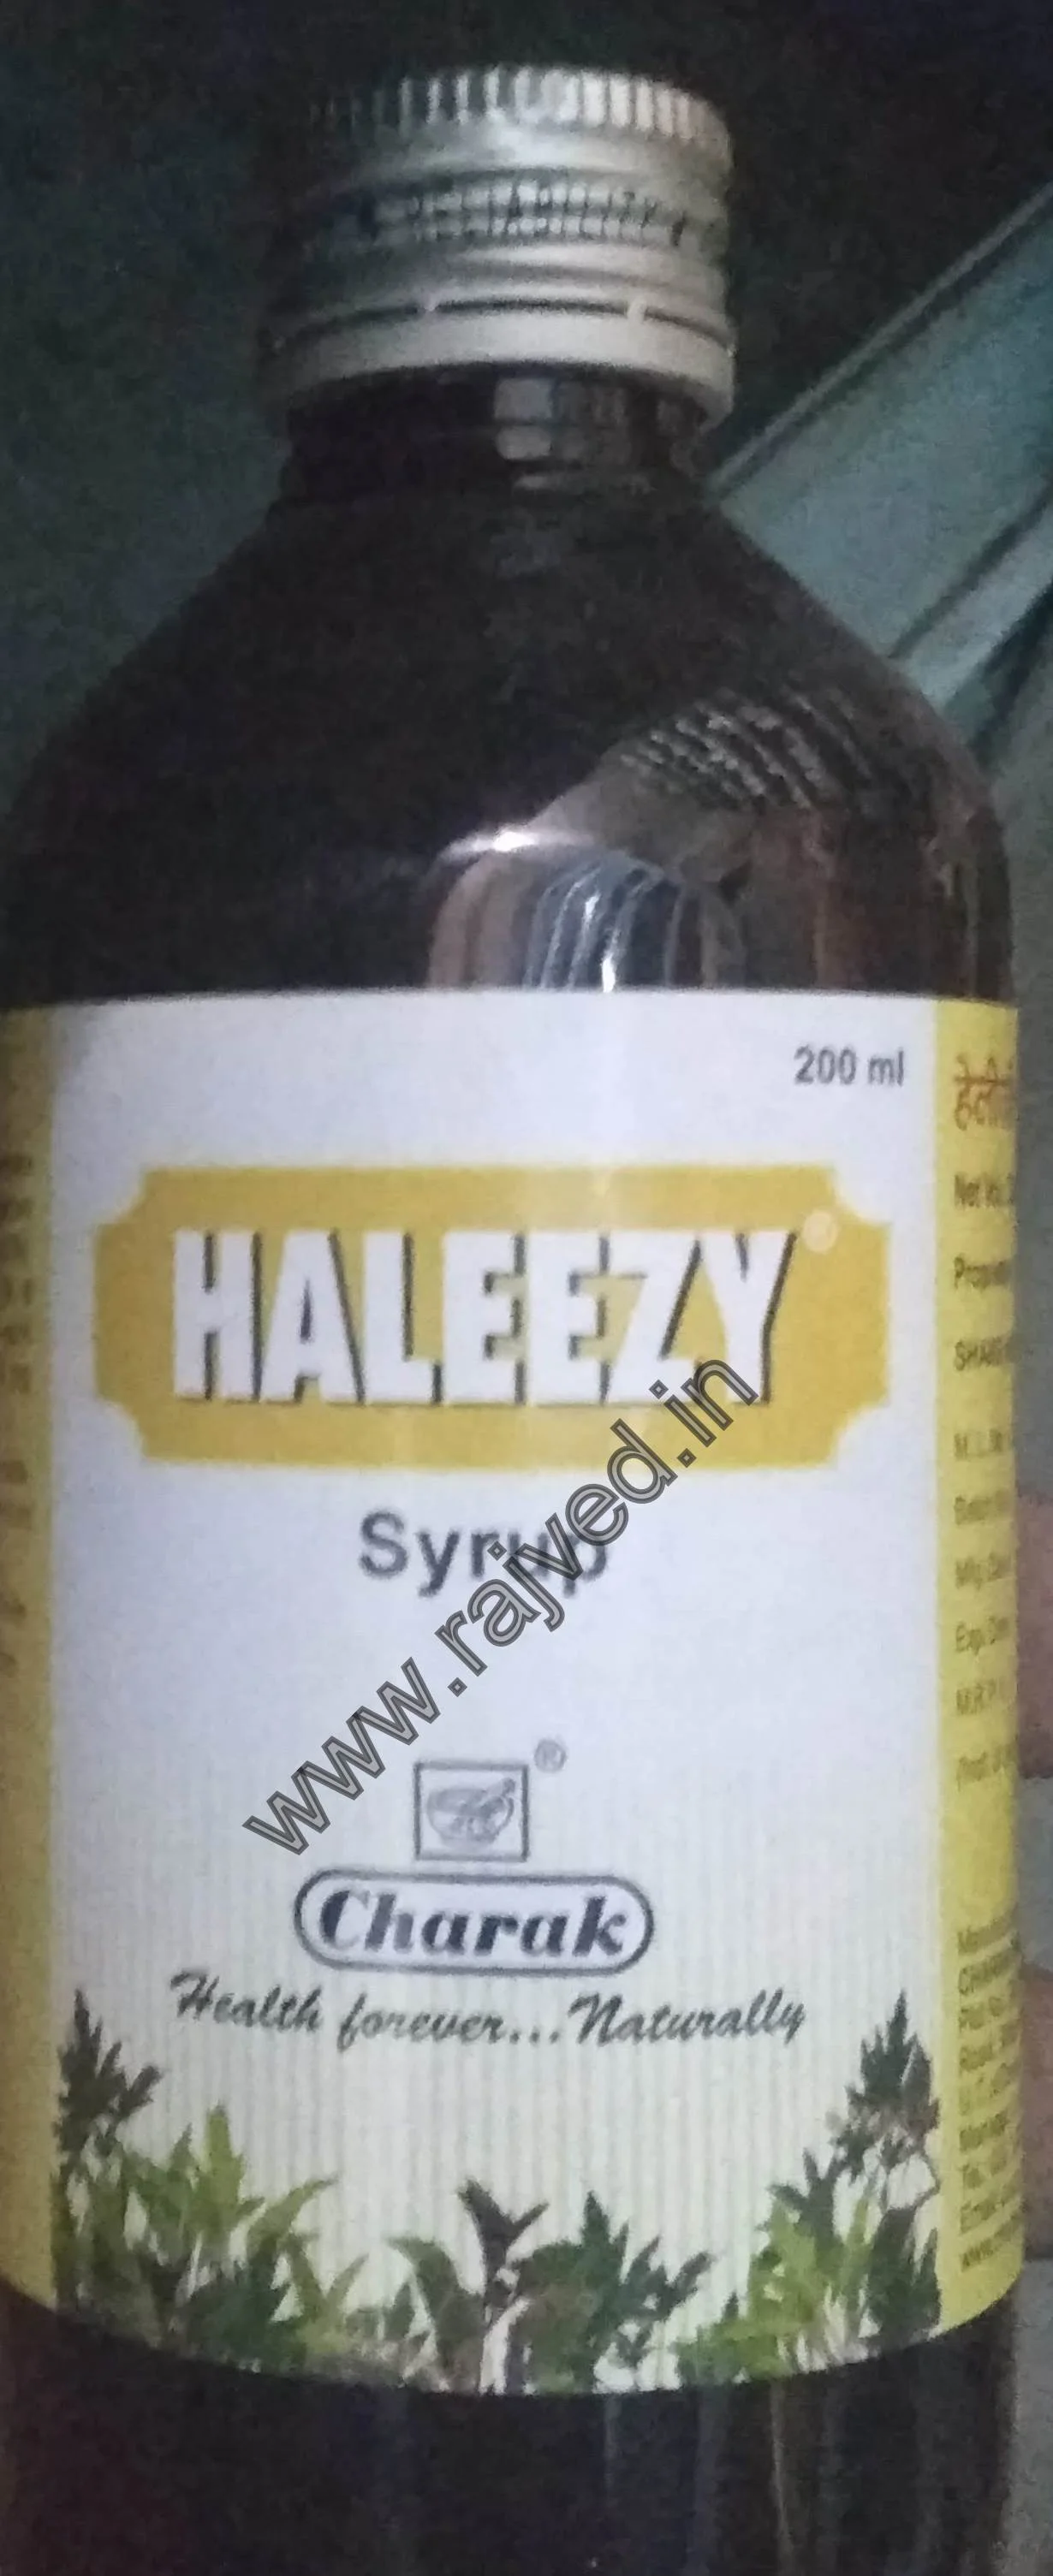 haleezy syrup 200 ml charak pharma mumbai